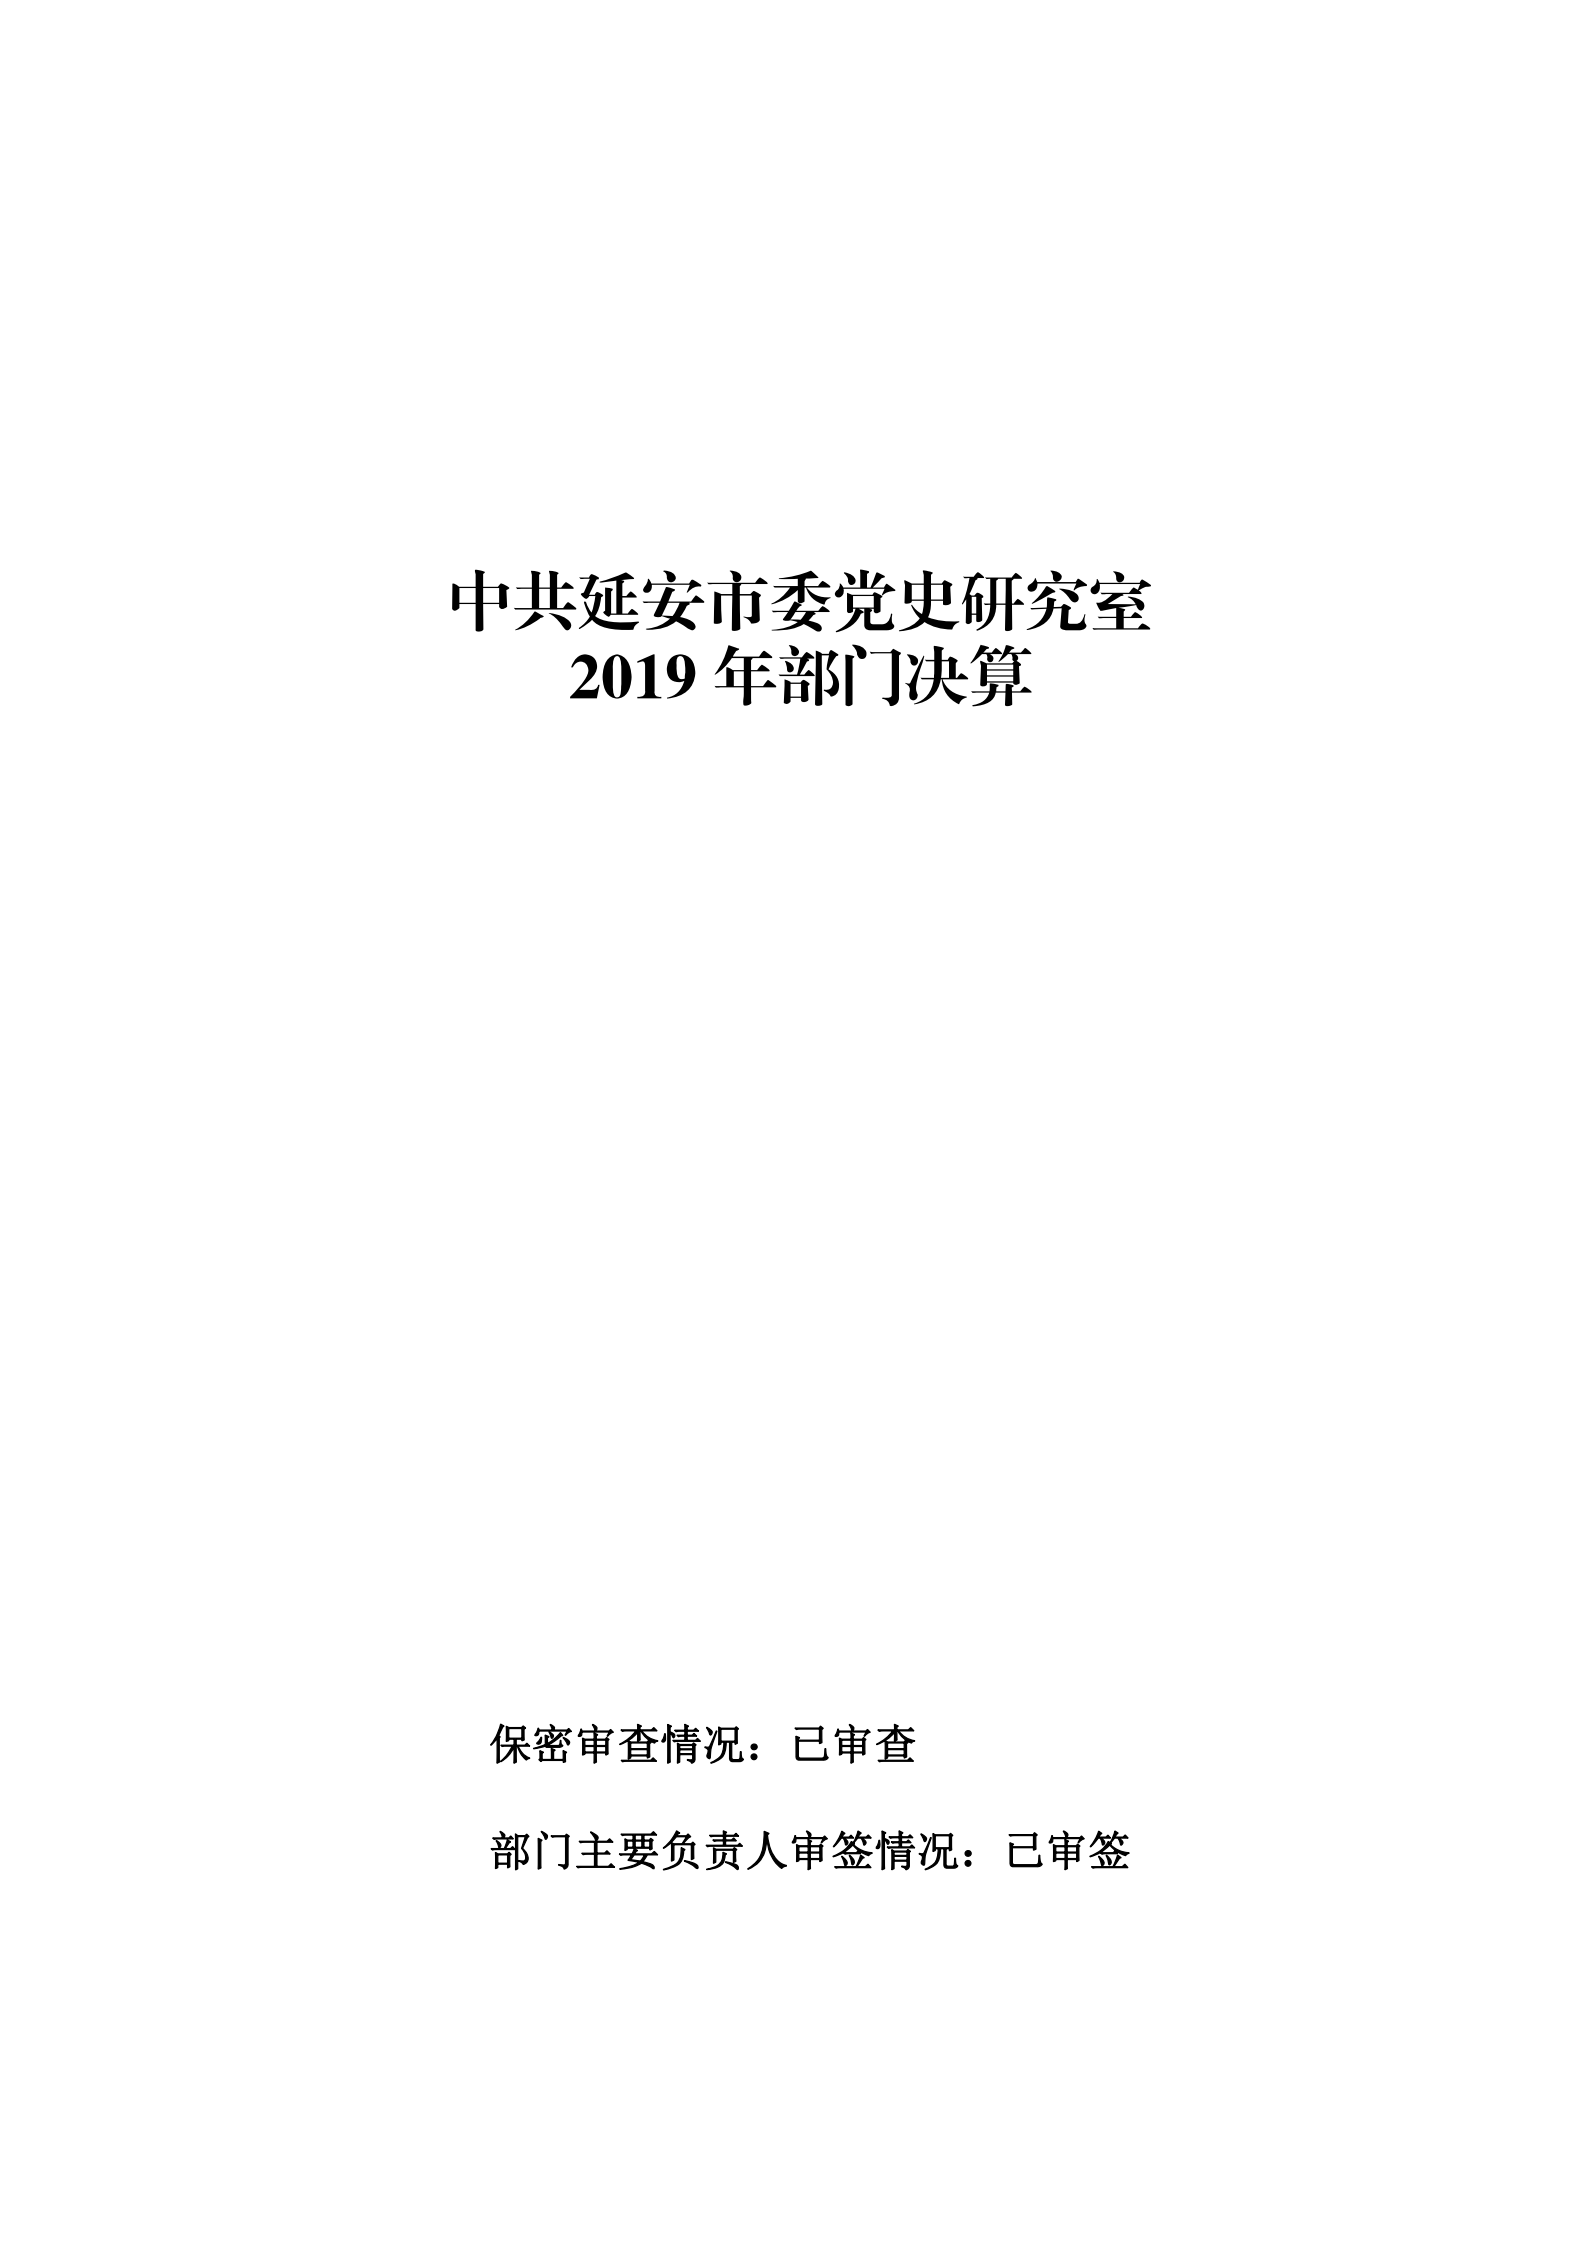 中共延安市委党史研究室2019年部门决算(图1)